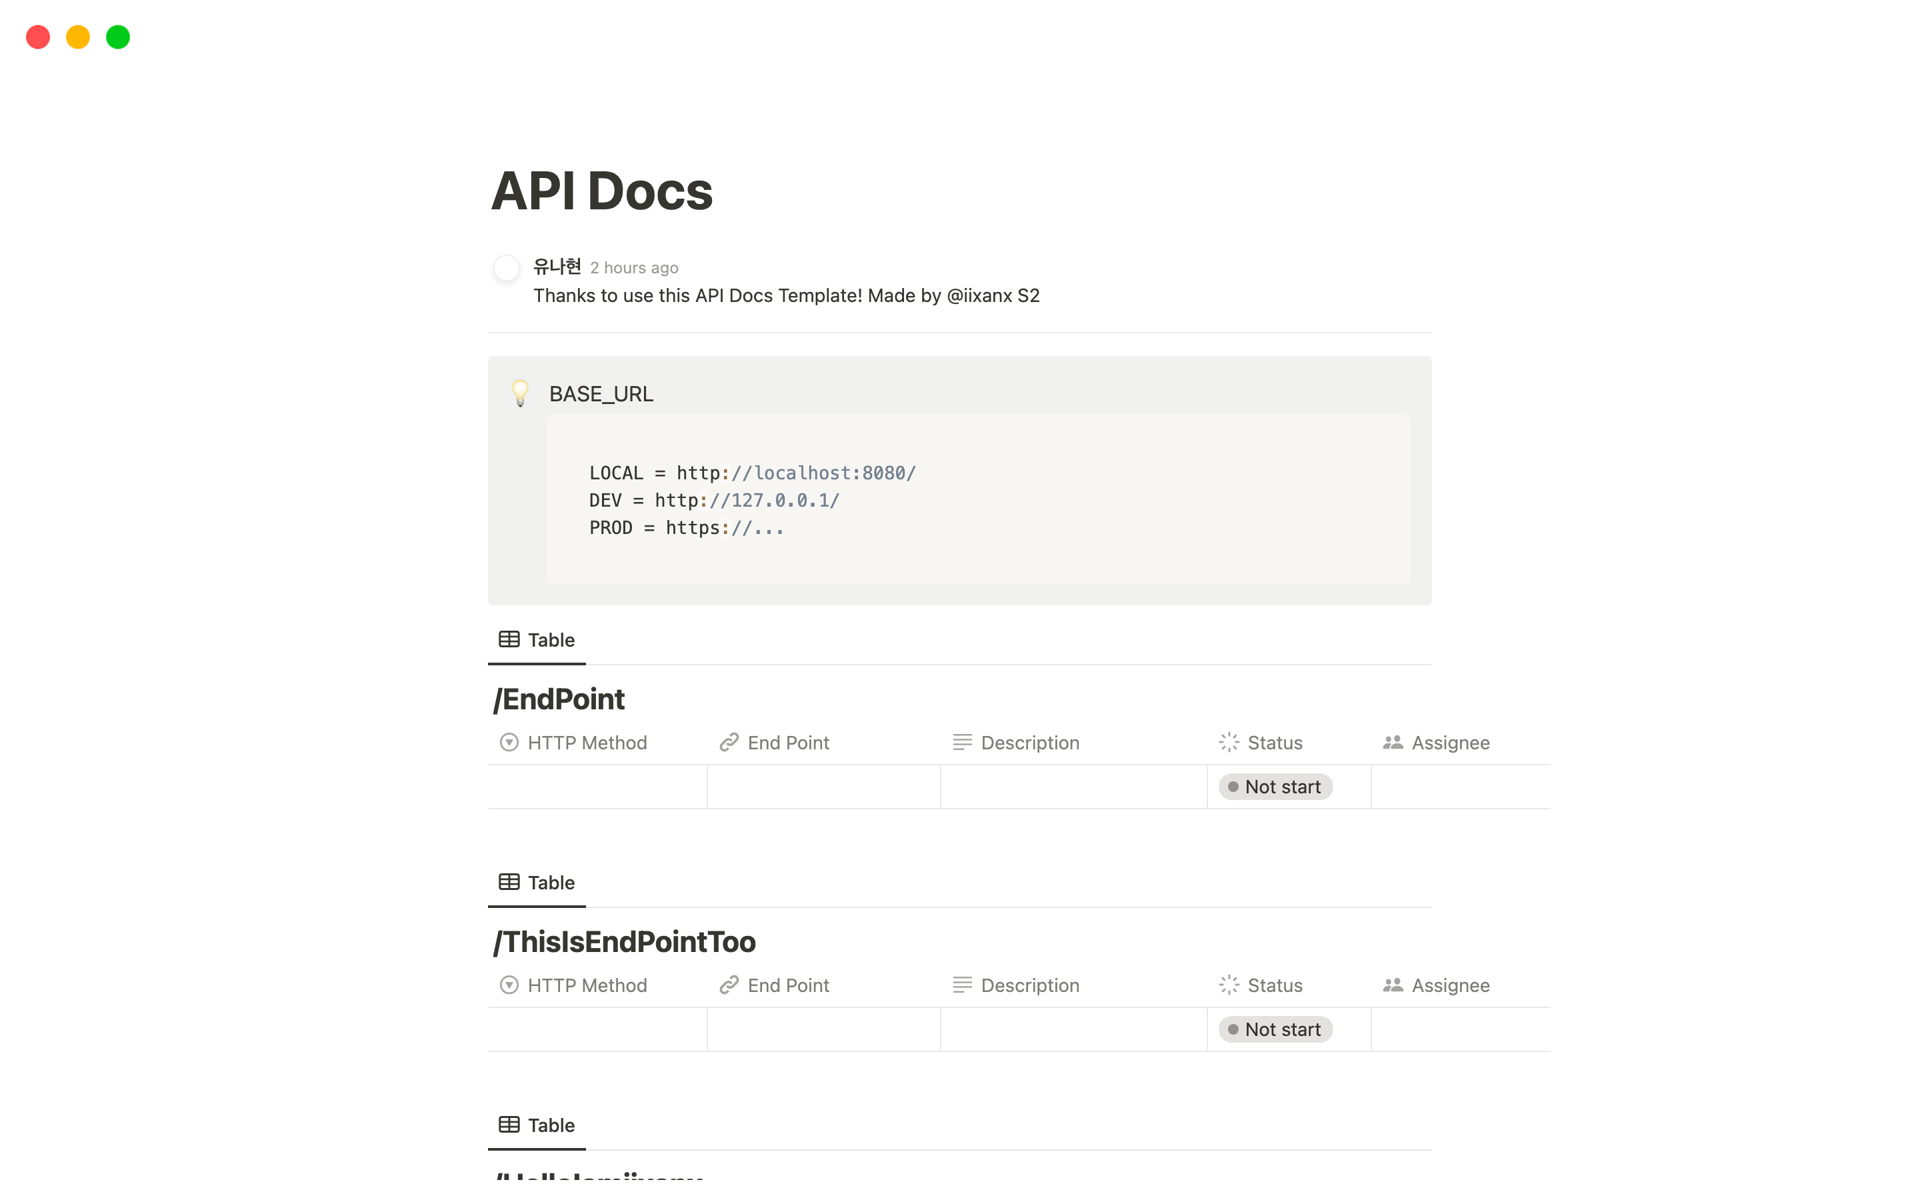 Aperçu du modèle de API Docs